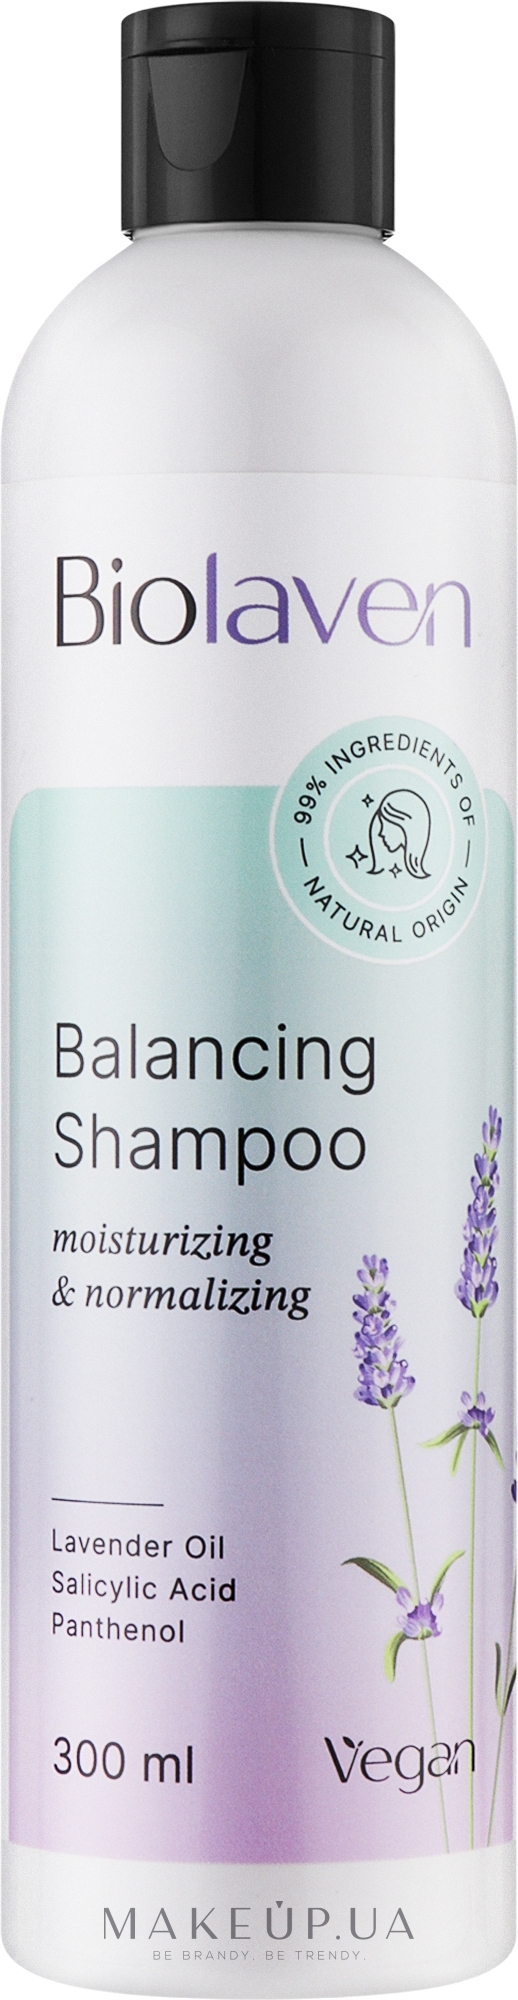 Балансирующий шампунь для волос - Biolaven Balancing Shampoo — фото 300ml